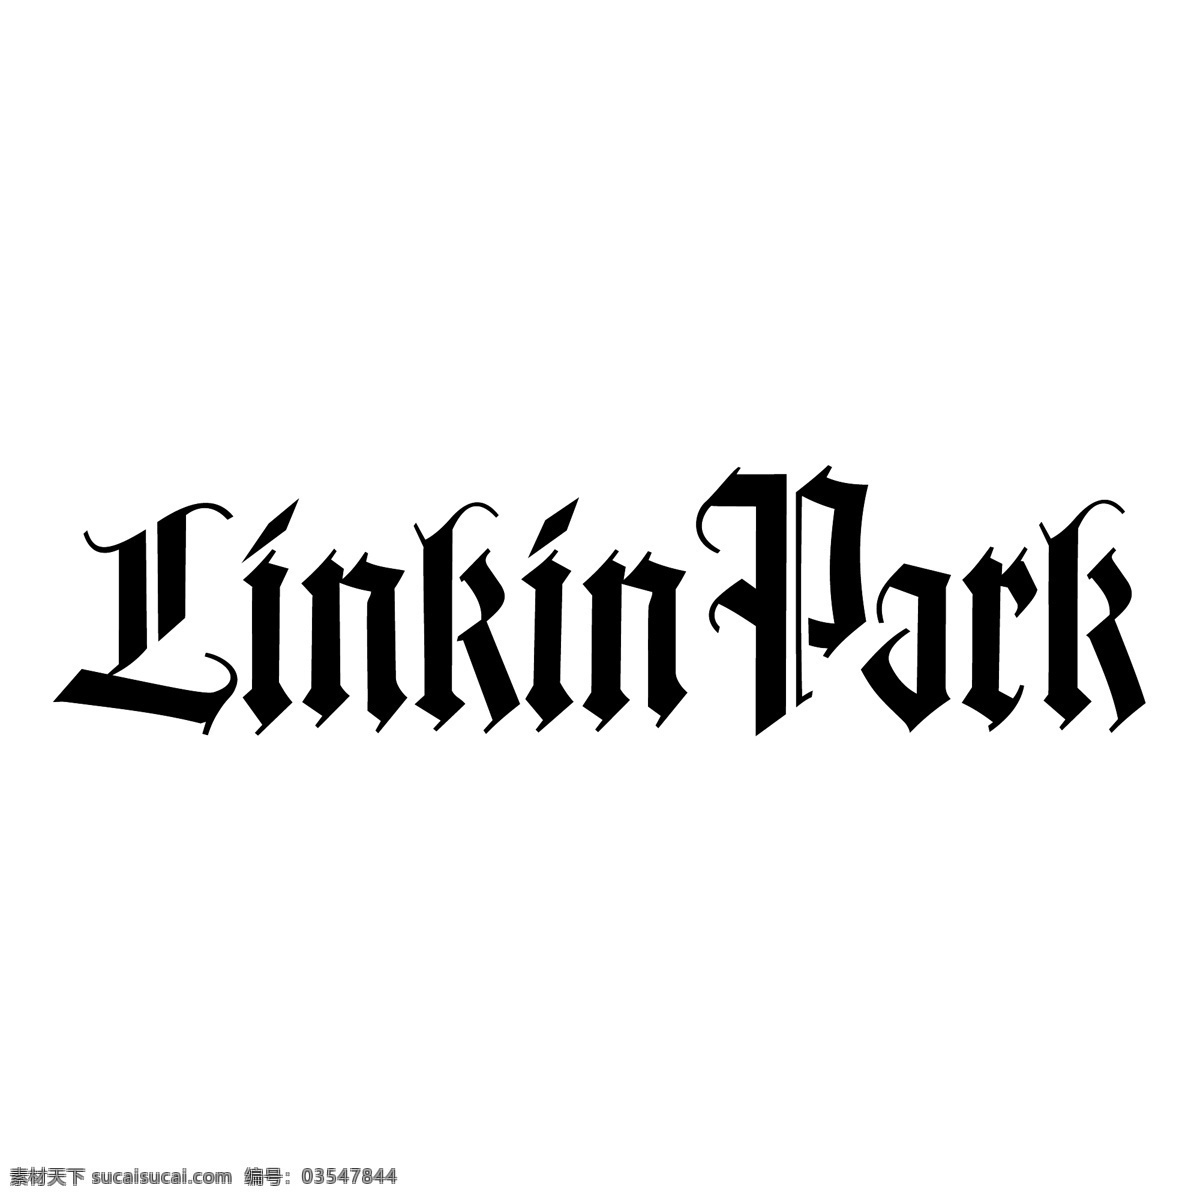 林肯公园3 公园 林肯 林肯公园 标志 矢量 向量 林肯公园2 矢量林肯公园 矢量图 建筑家居